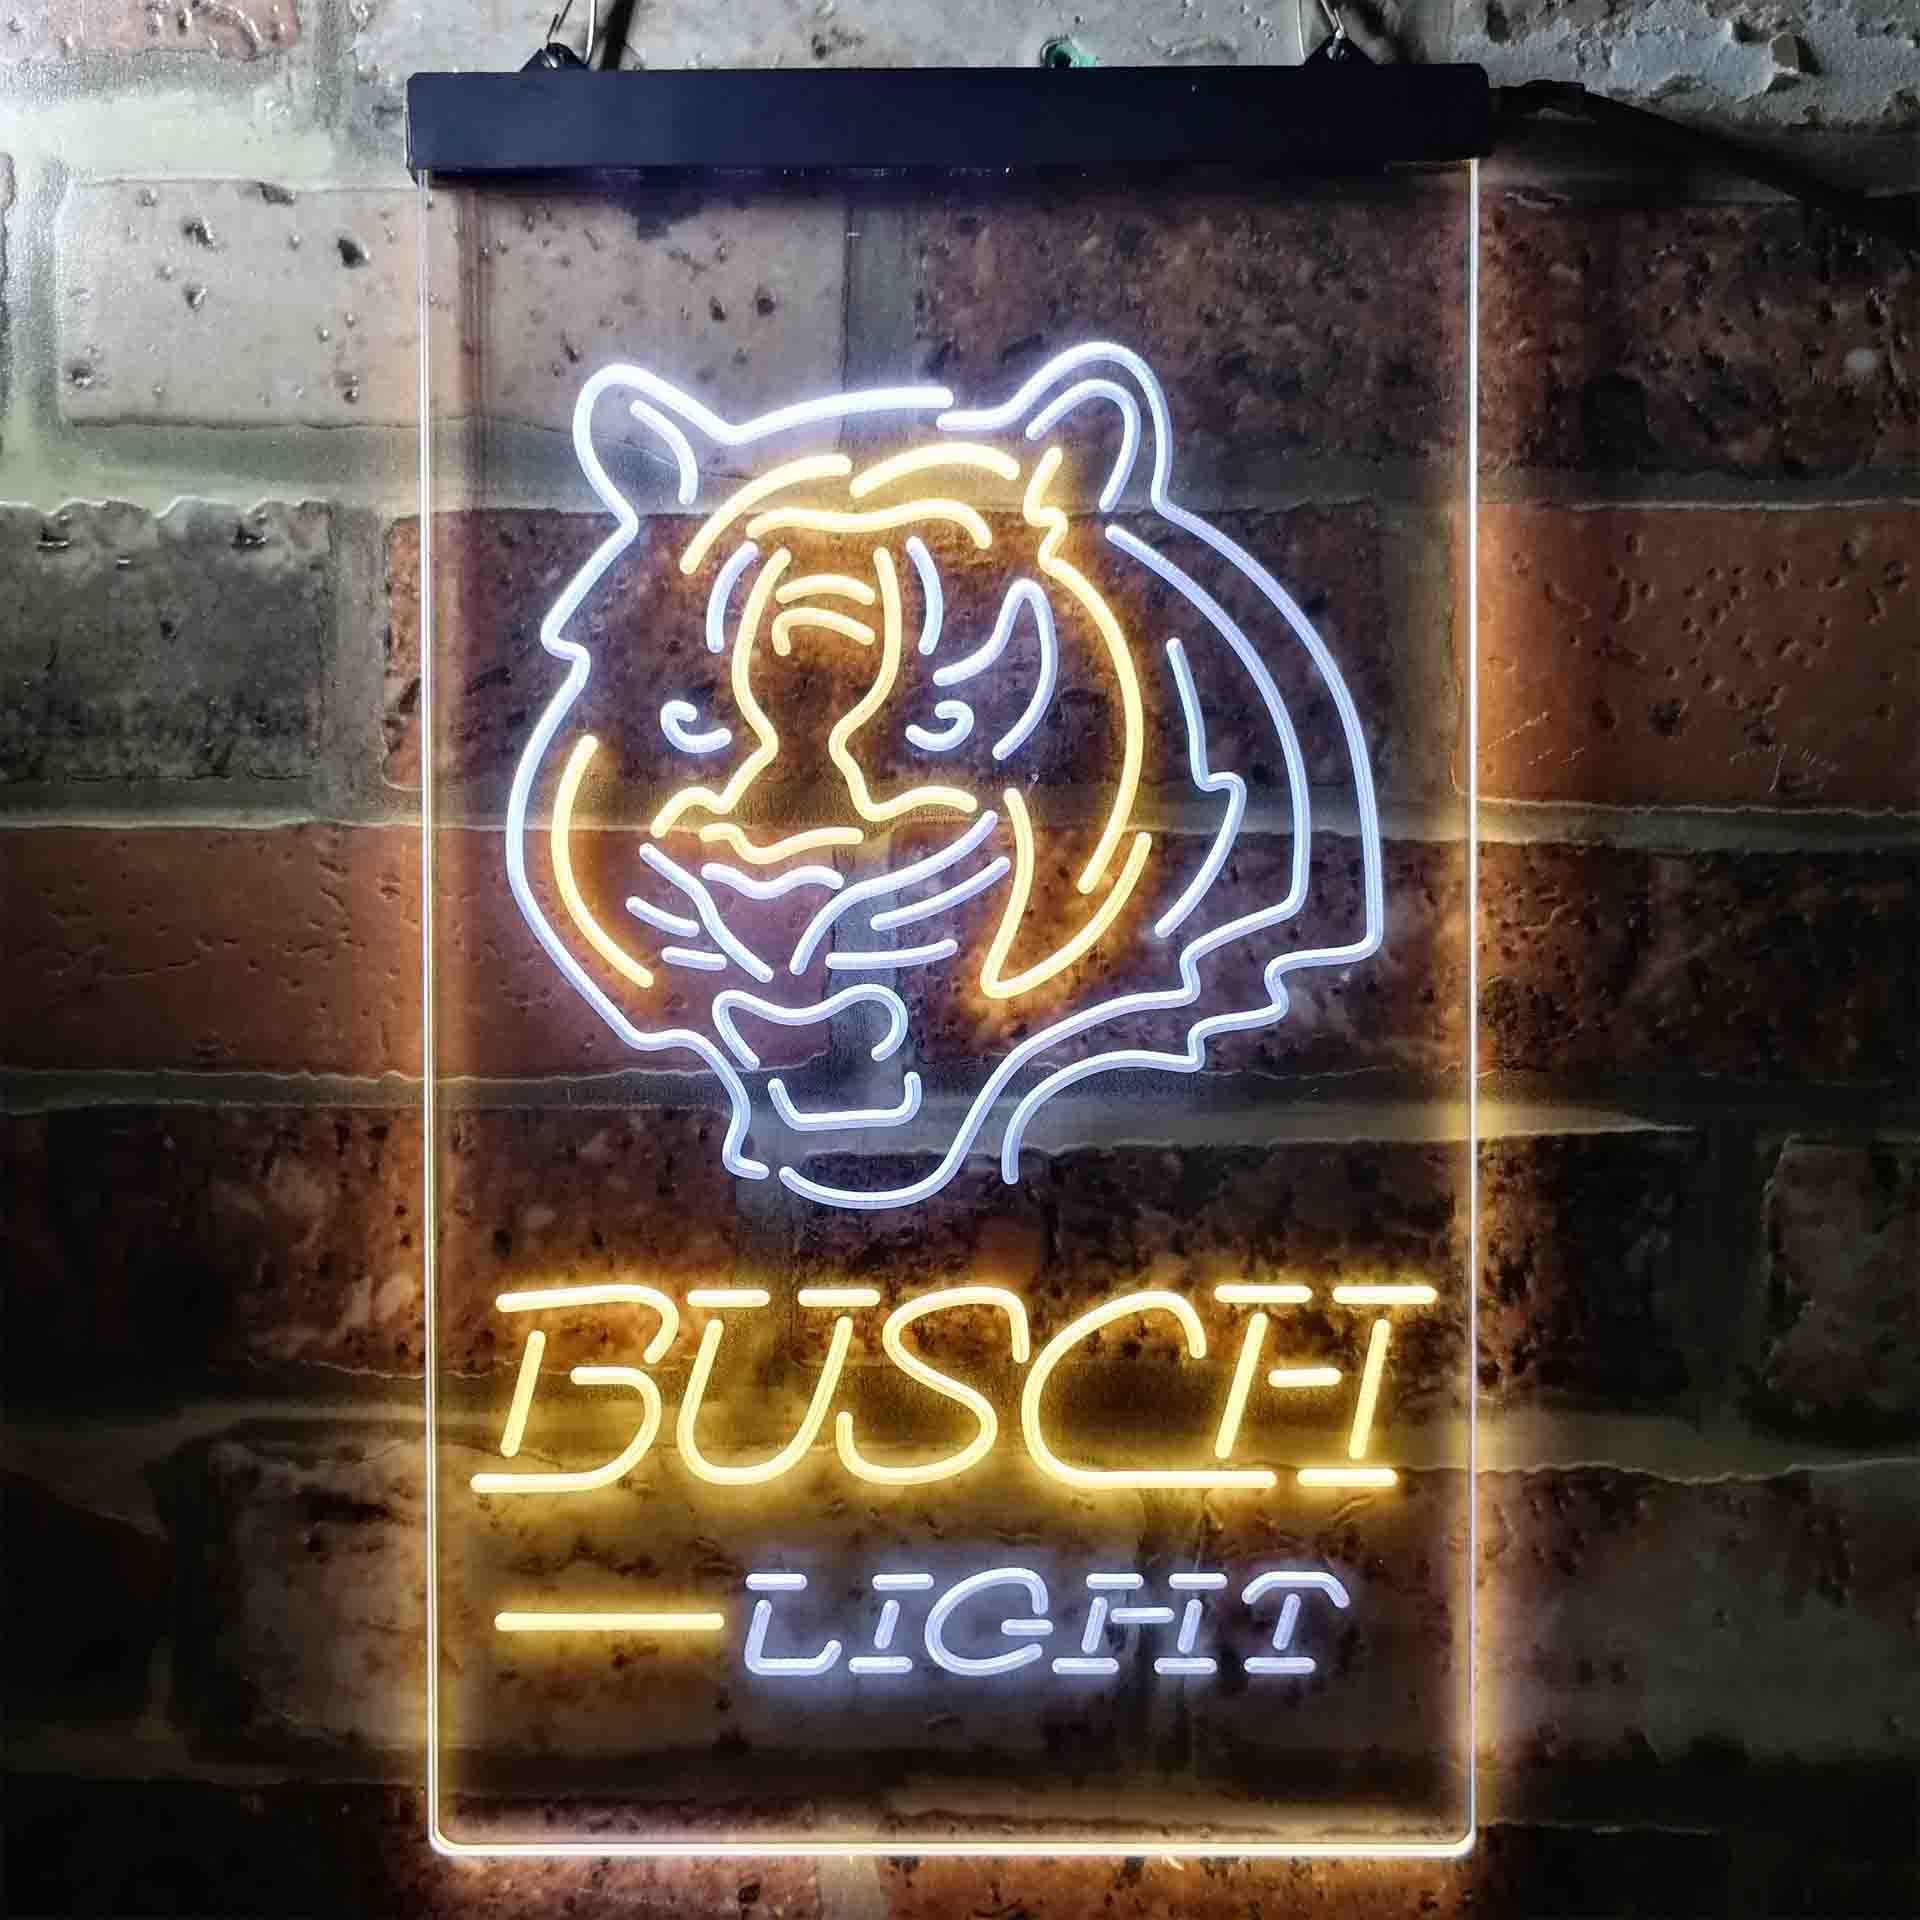 Busch Light Cincinnati Bengals Neon-Like LED Sign